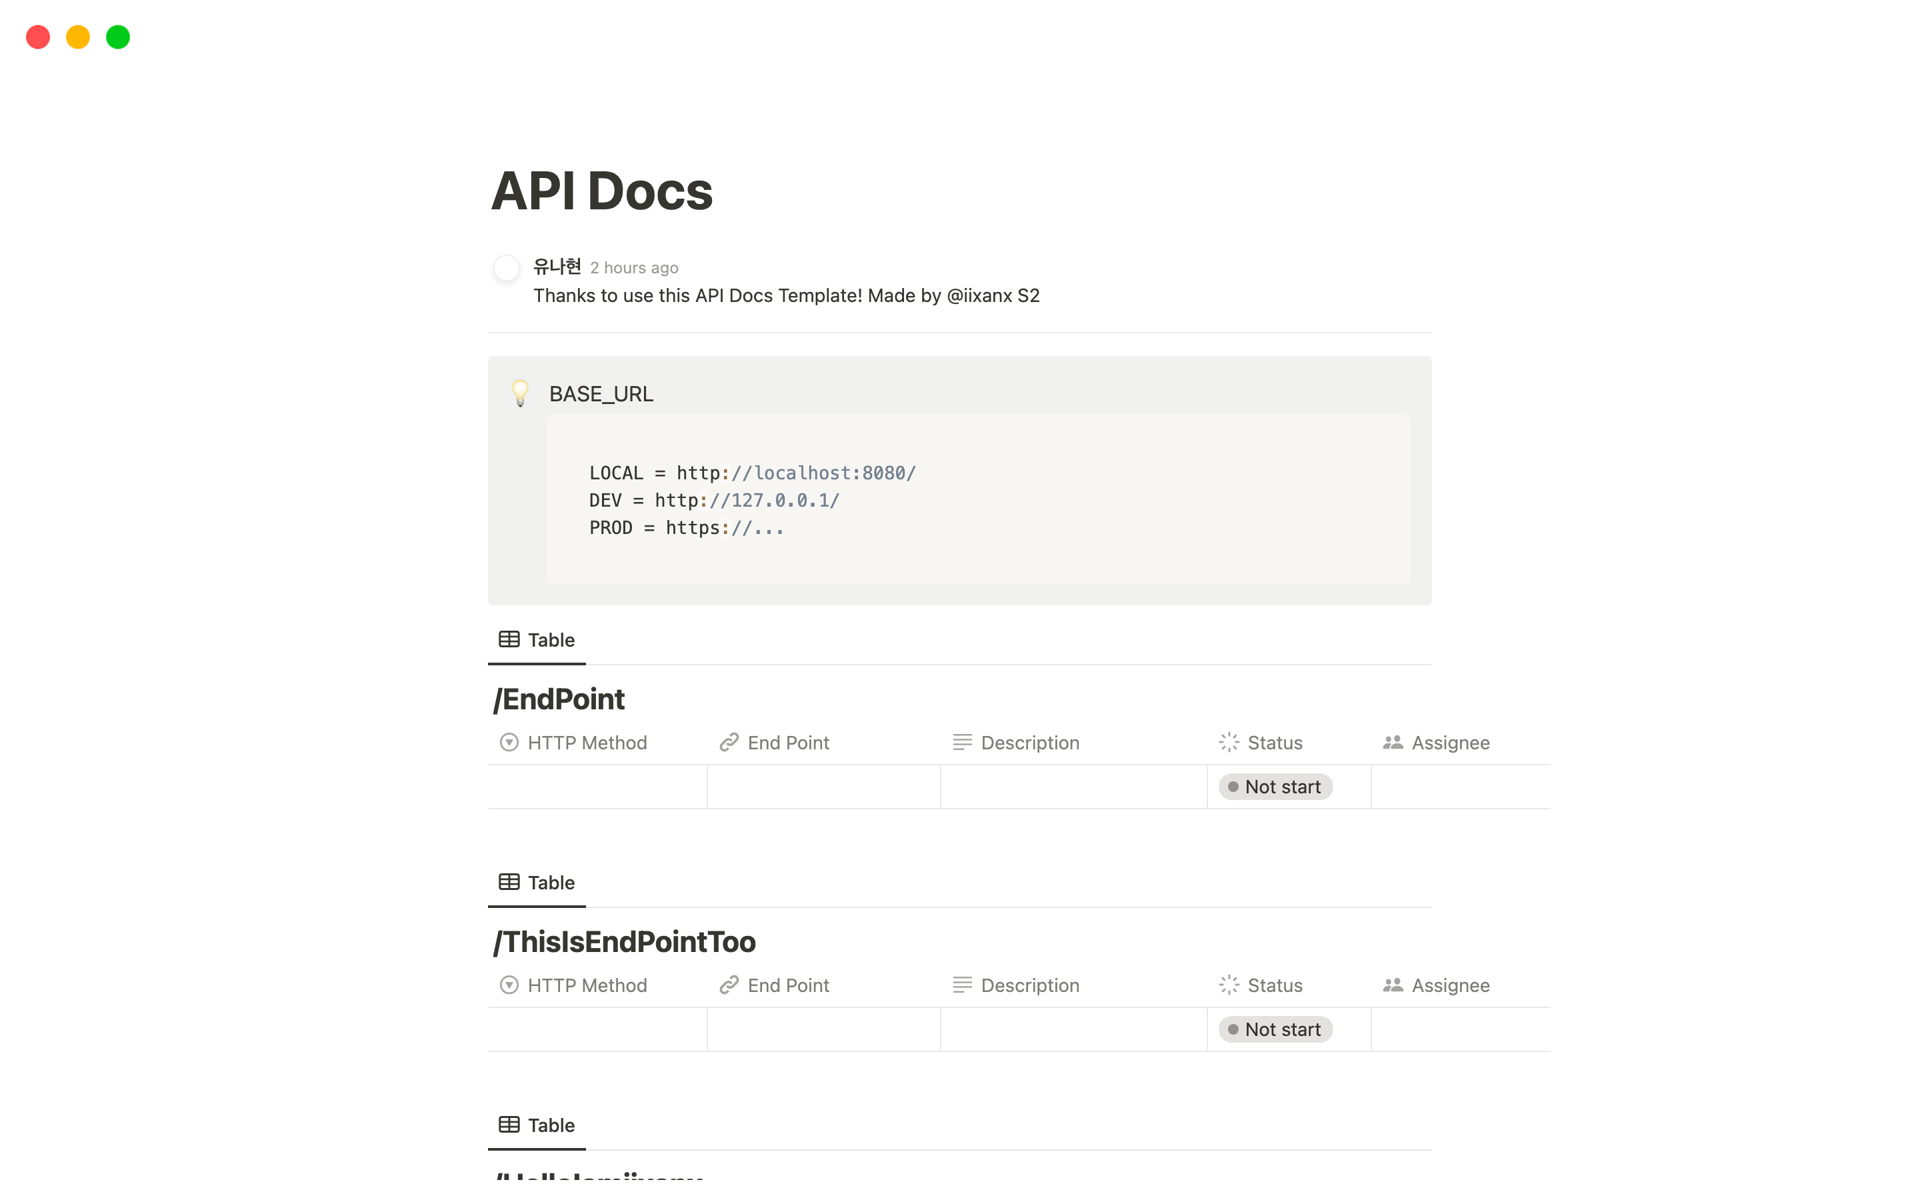 Vista previa de una plantilla para API Docs